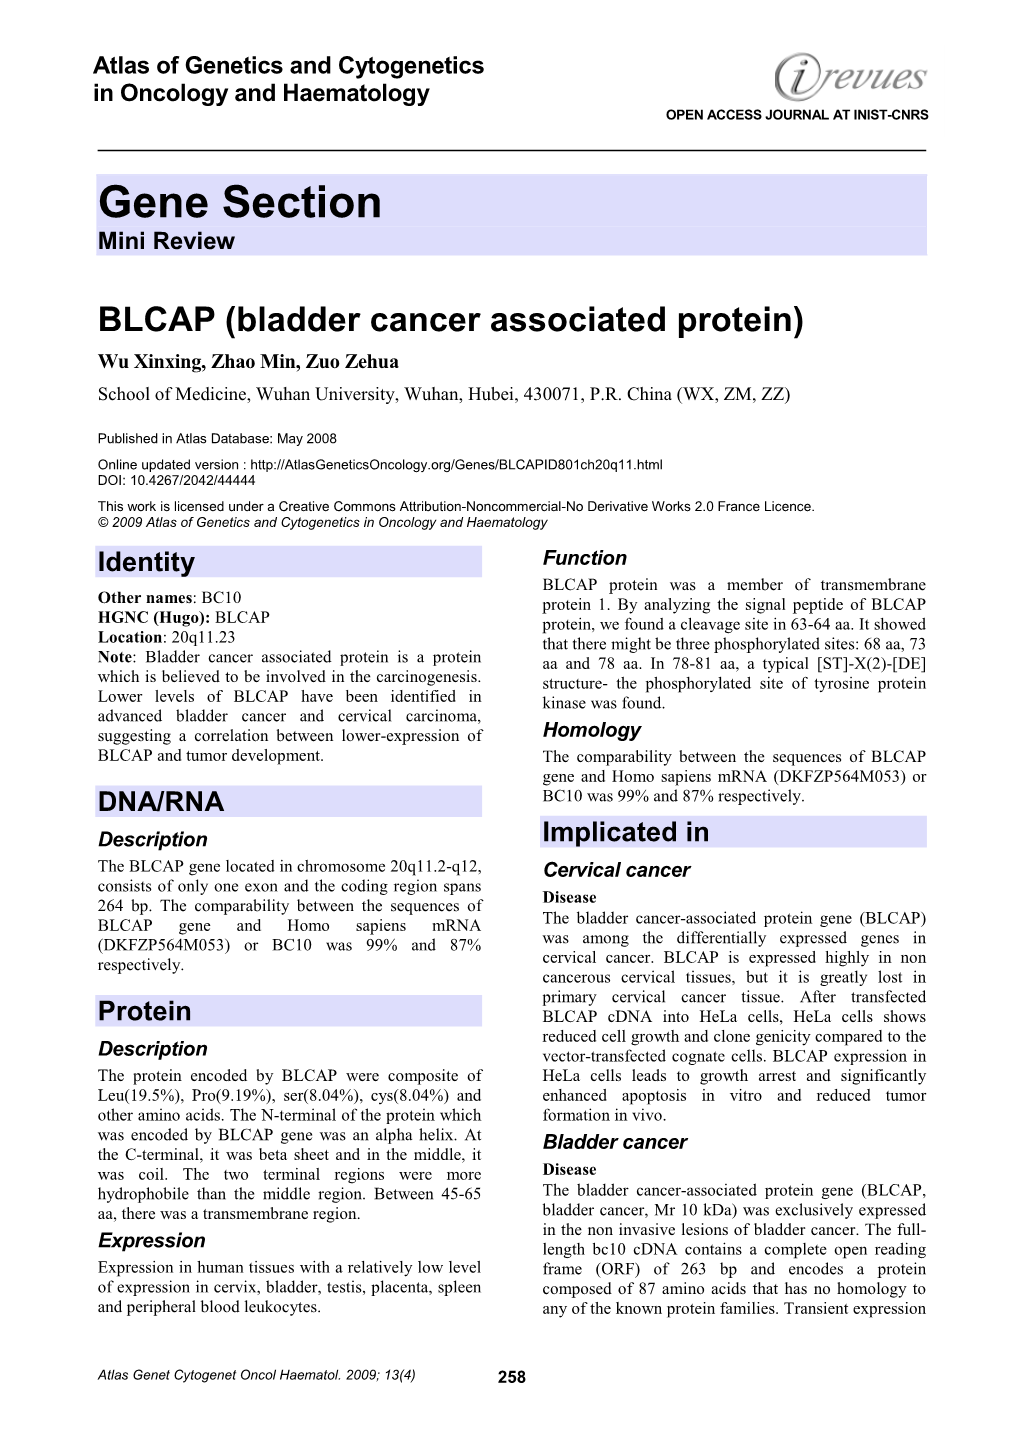 Bladder Cancer Associated Protein) Wu Xinxing, Zhao Min, Zuo Zehua School of Medicine, Wuhan University, Wuhan, Hubei, 430071, P.R